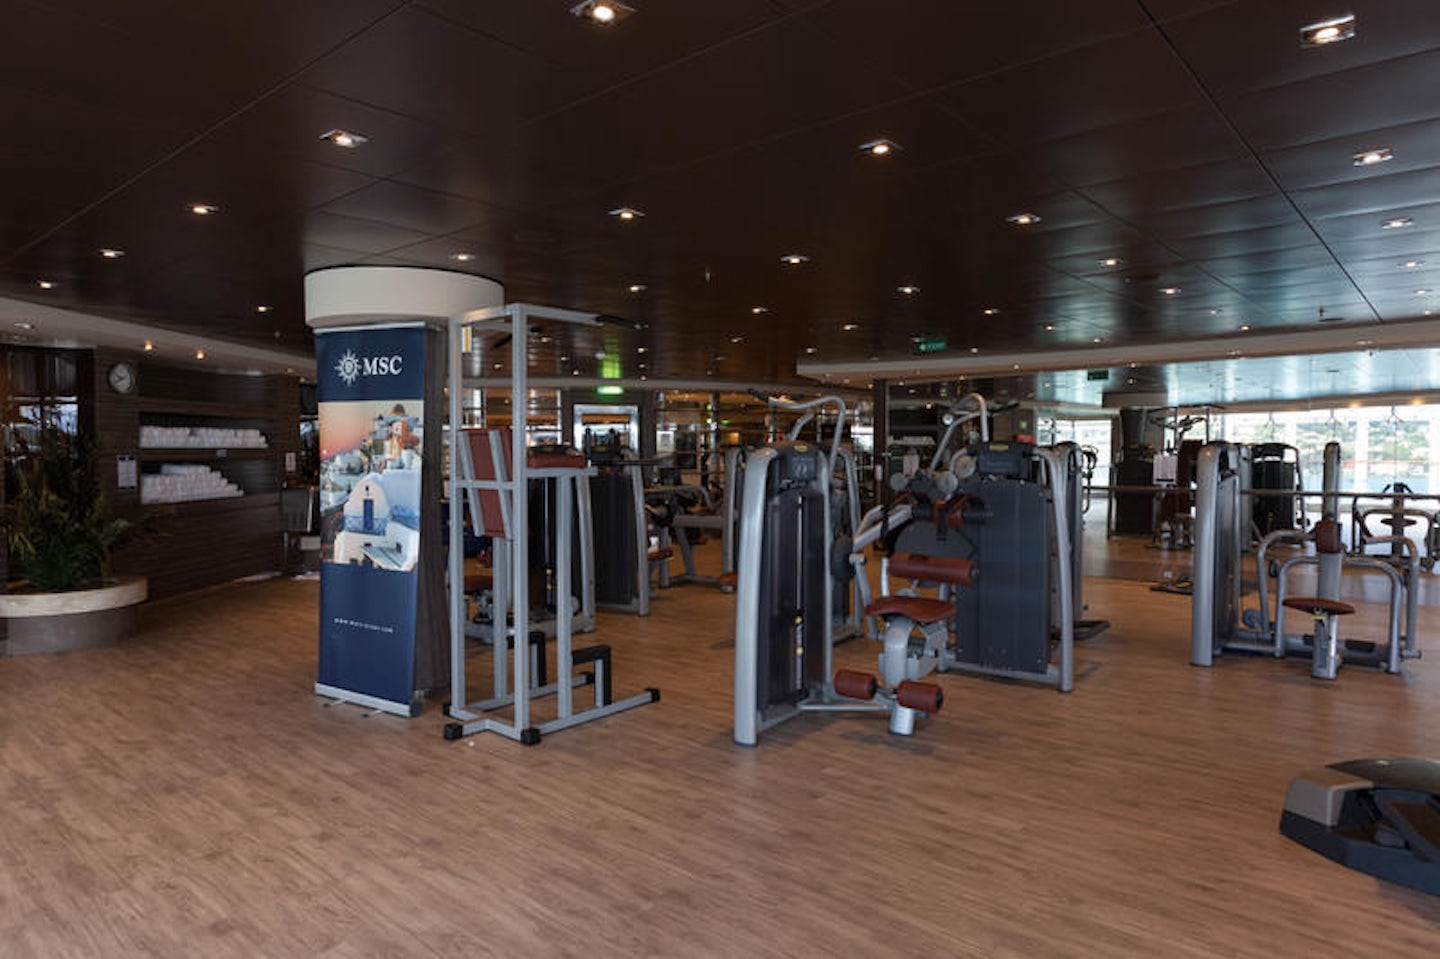 Fitness Center on MSC Divina